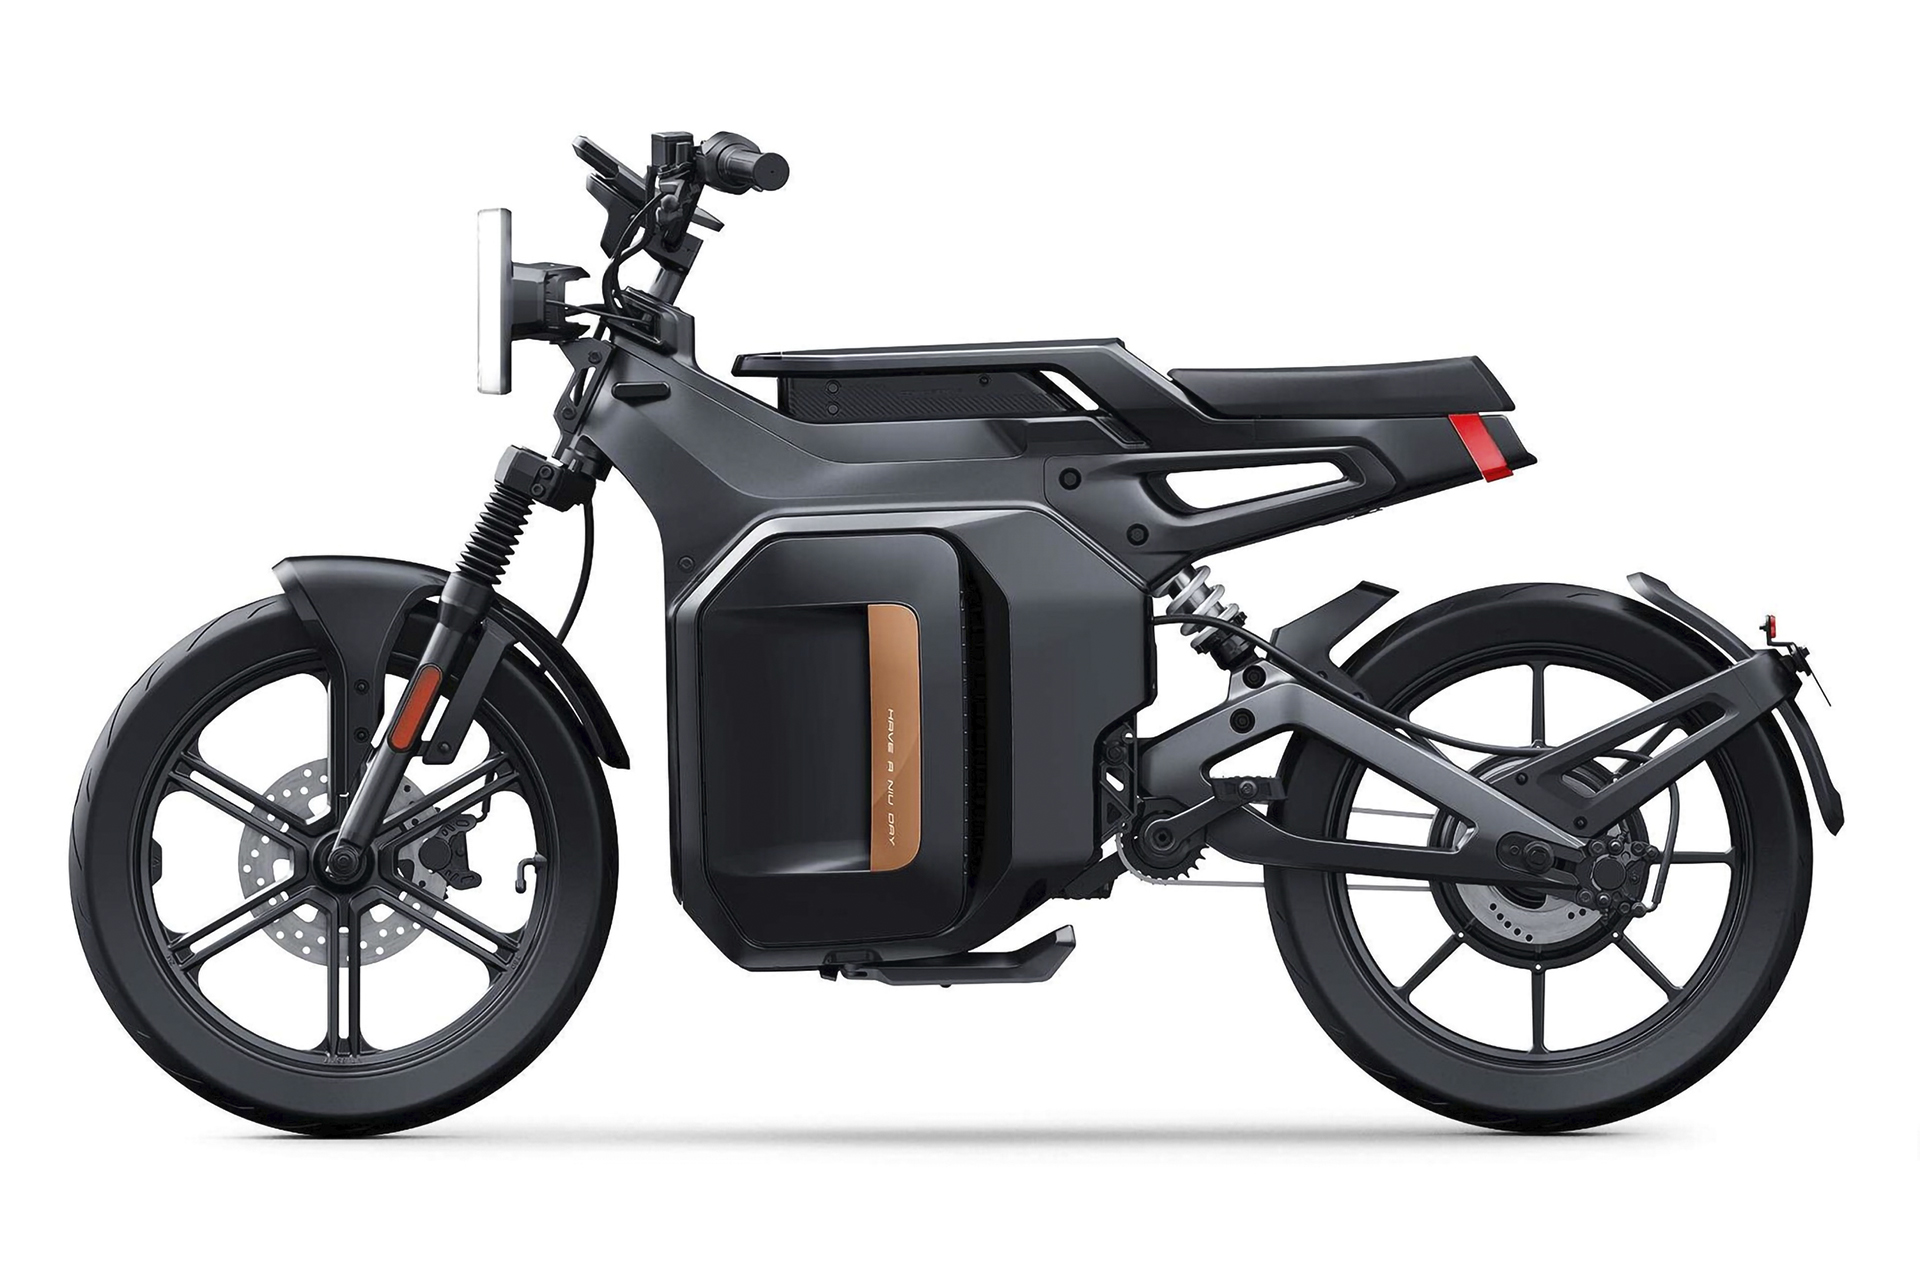 Bicicleta elétrica parruda, com cara de moto, tem 65 km de autonomia, freios a disco e suspensão telescópica